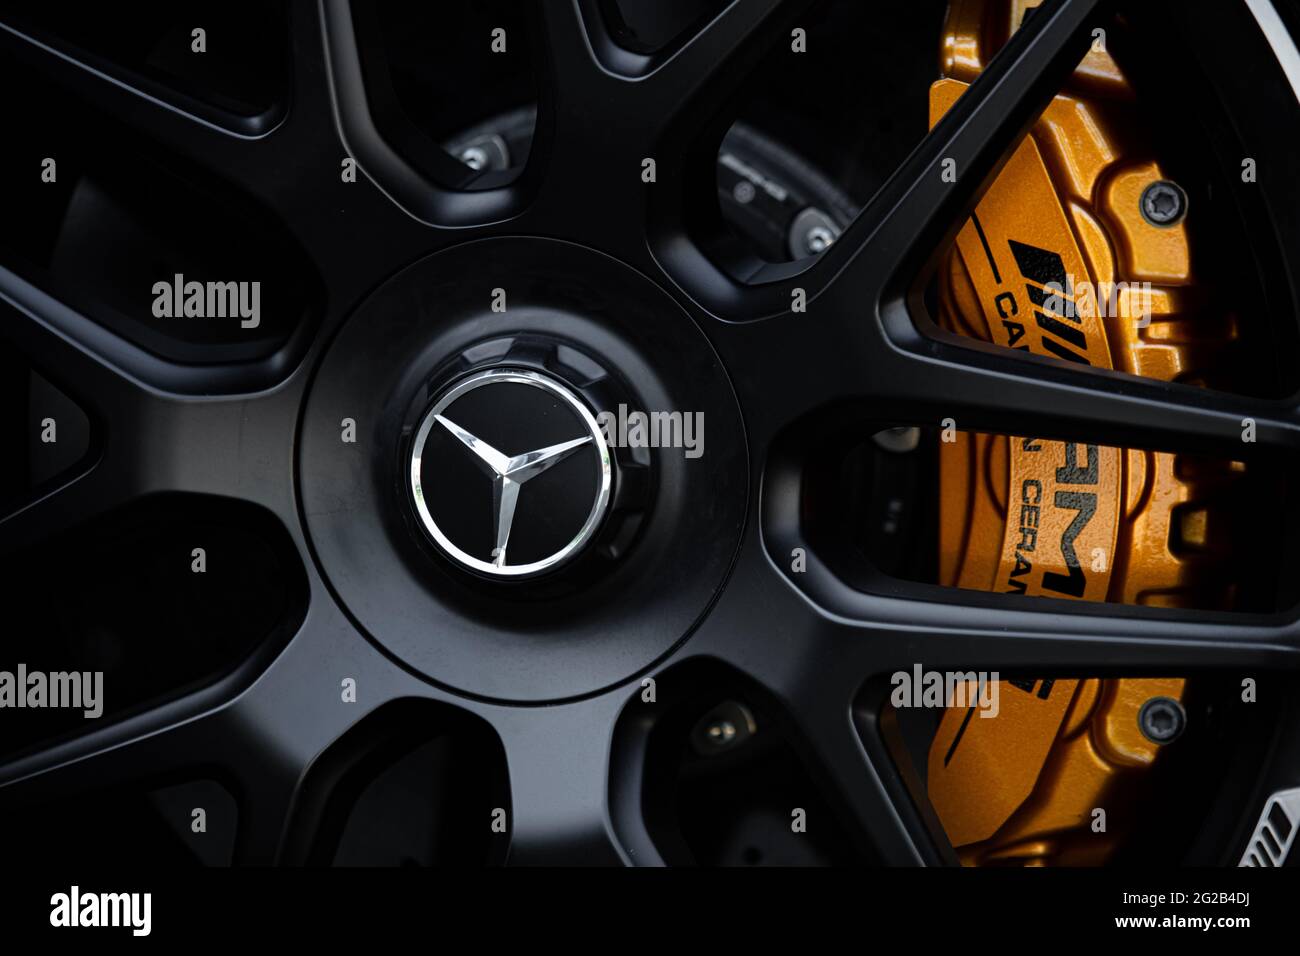 Stoccarda, Germania - Giugno 2021: Ruota Mercedes-Benz. Freni carbo-ceramici Mercedes amg Foto Stock